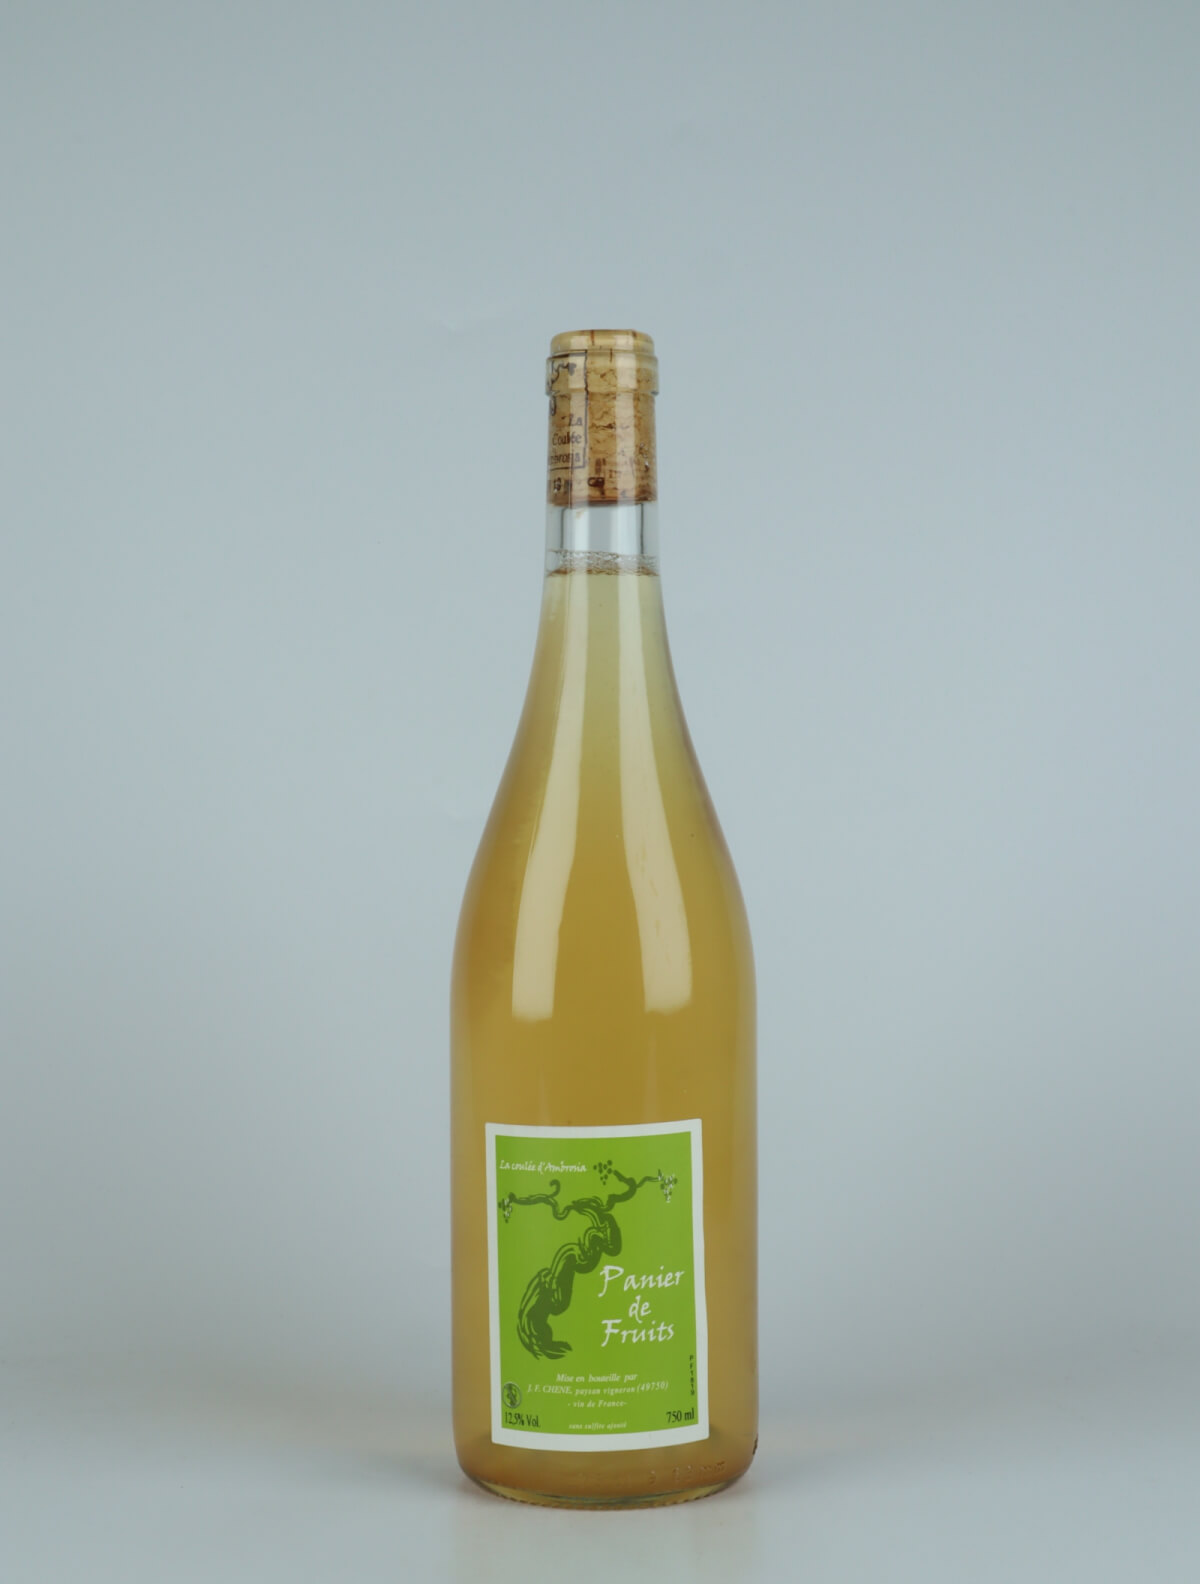 En flaske 2018 Panier de Fruits Hvidvin fra Jean-Francois Chene, Loire i Frankrig